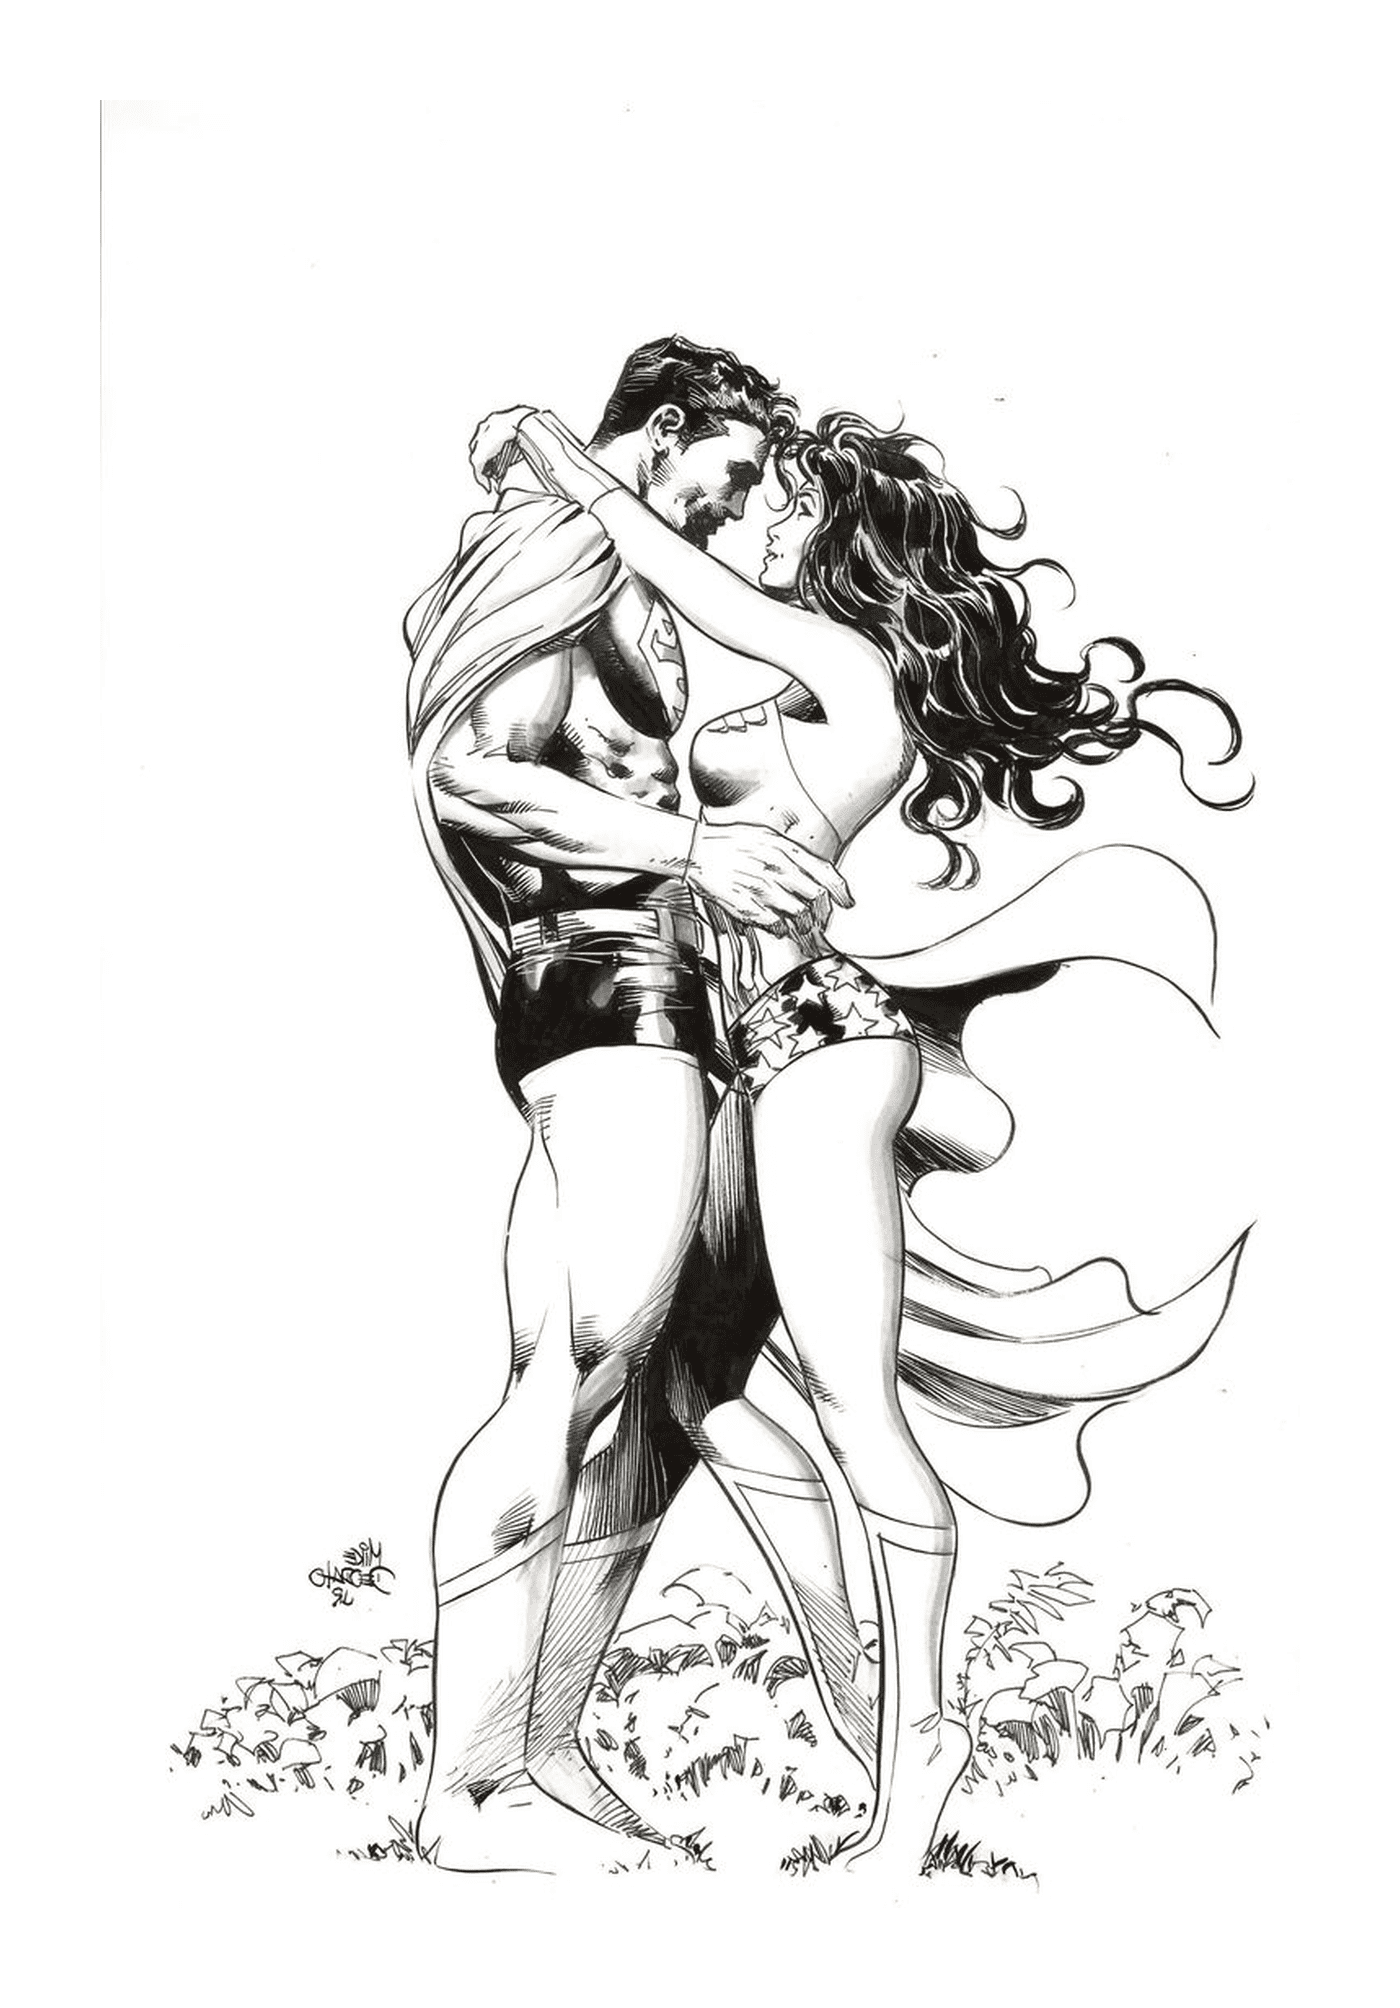  Mann und Frau, Wonder Woman in der Liebe mit Superman 